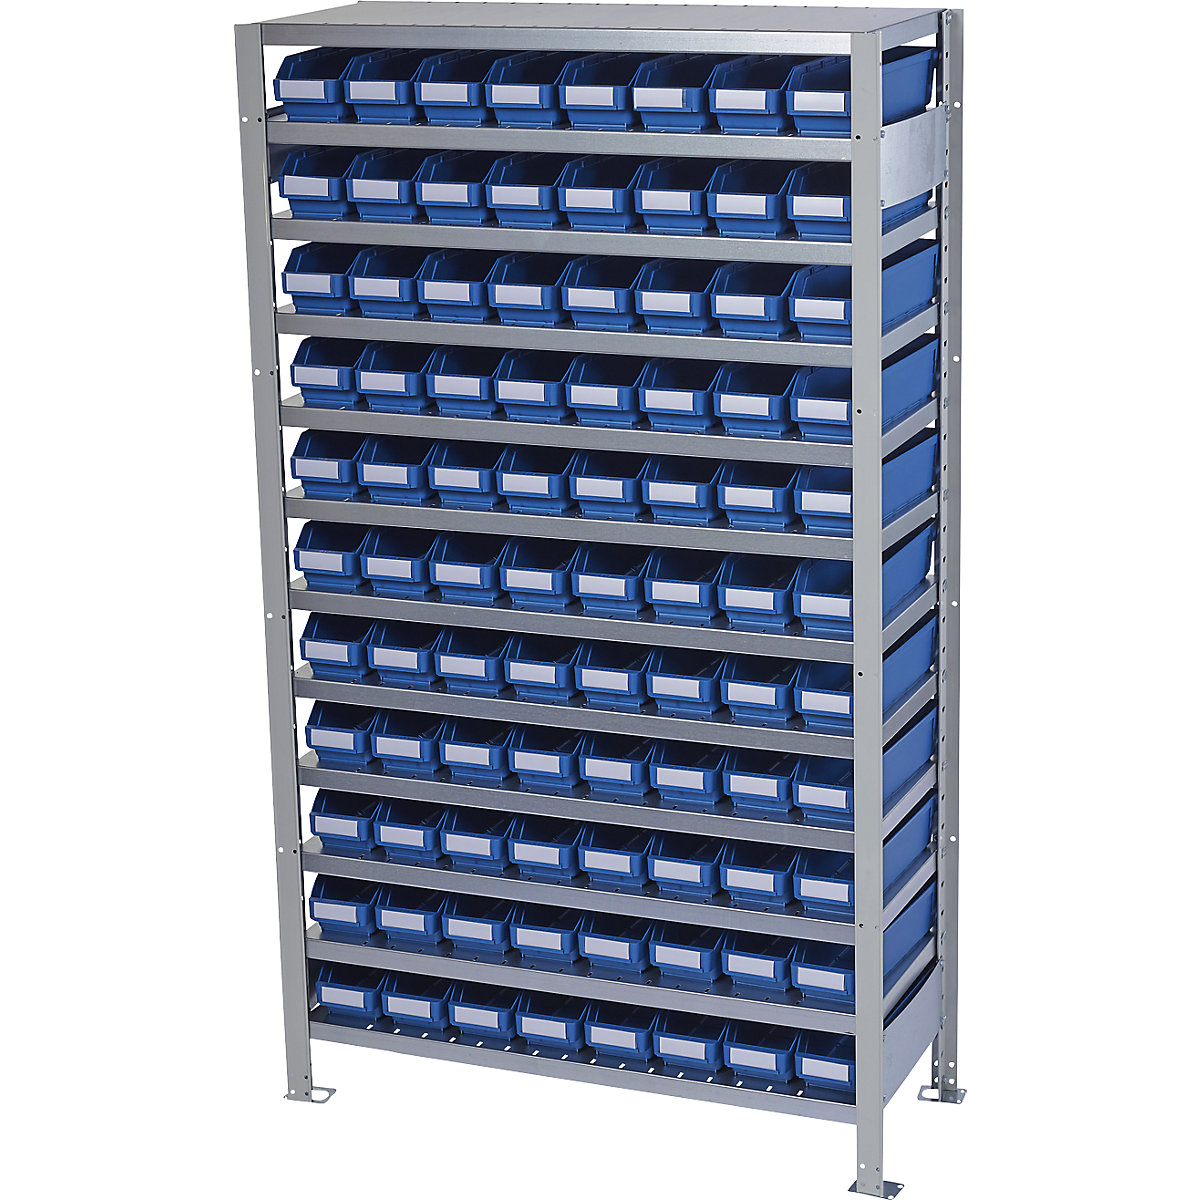 Összedugaszolós állvány dobozokkal – STEMO, állványmagasság 1790 mm, alapállvány, 300 mm mély, 88 kék doboz-32